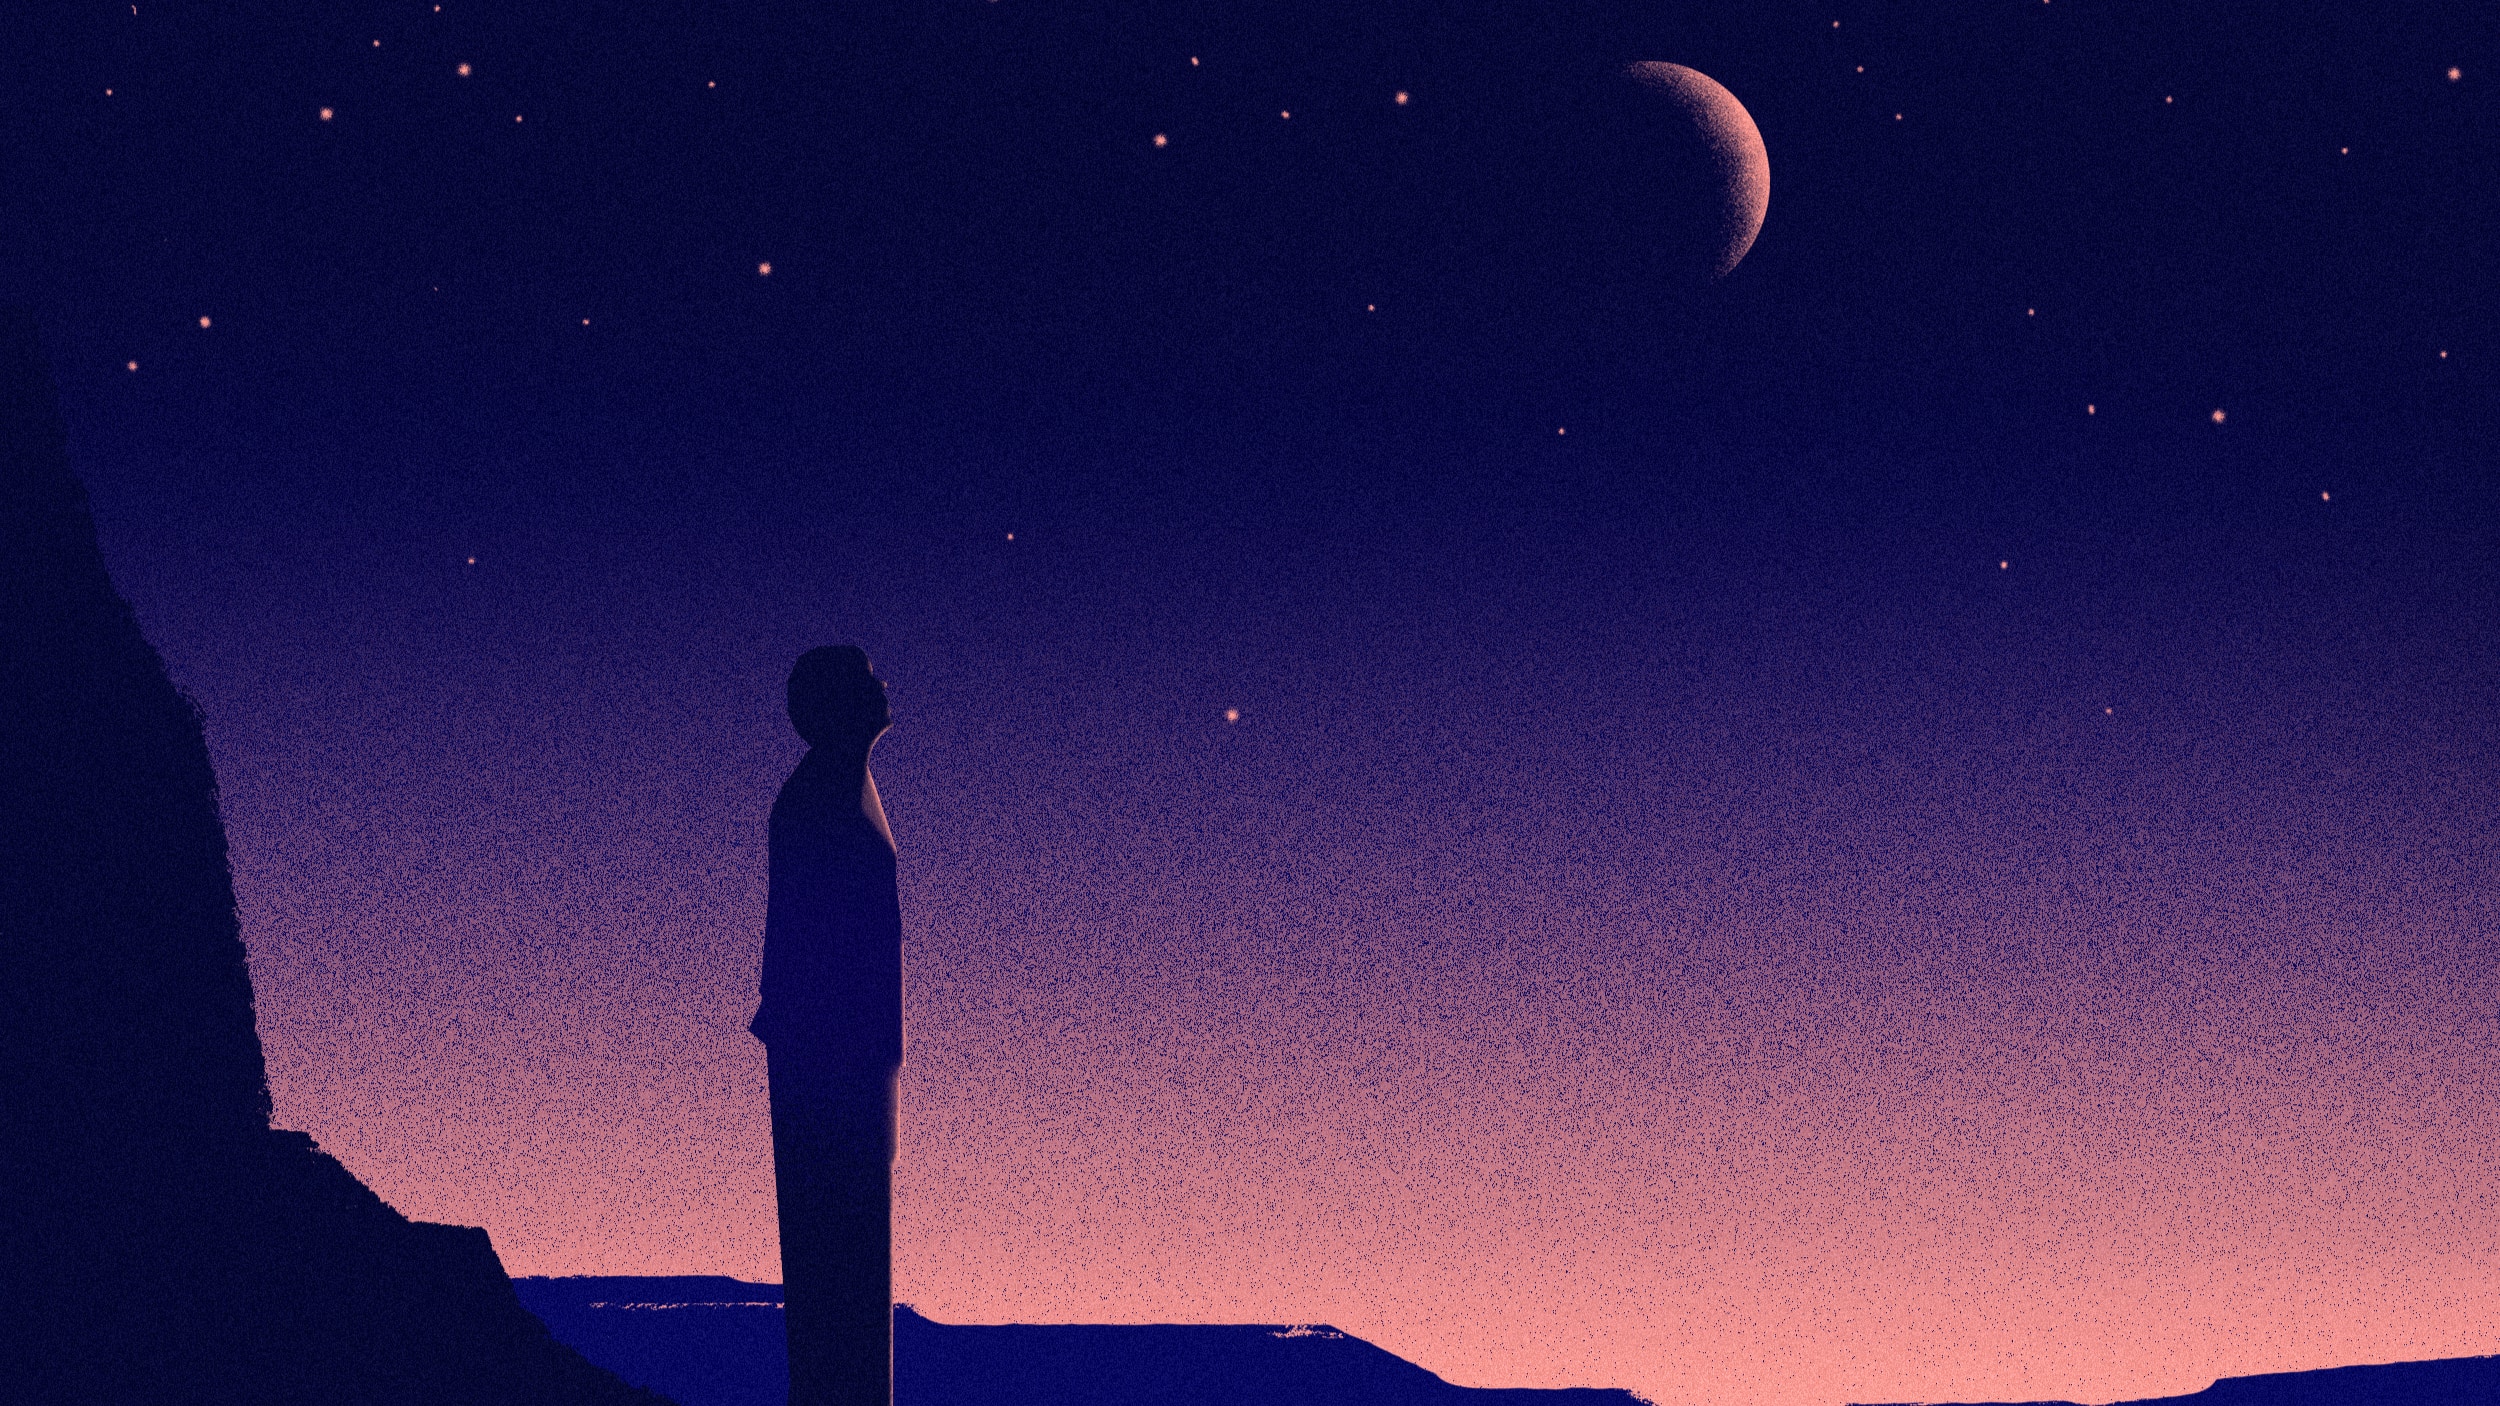 Homme debout devant un ciel étoilé, regardant vers les étoiles, illustrant les idées de grandeur qui peuvent être présentes dans troubles bipolaires.